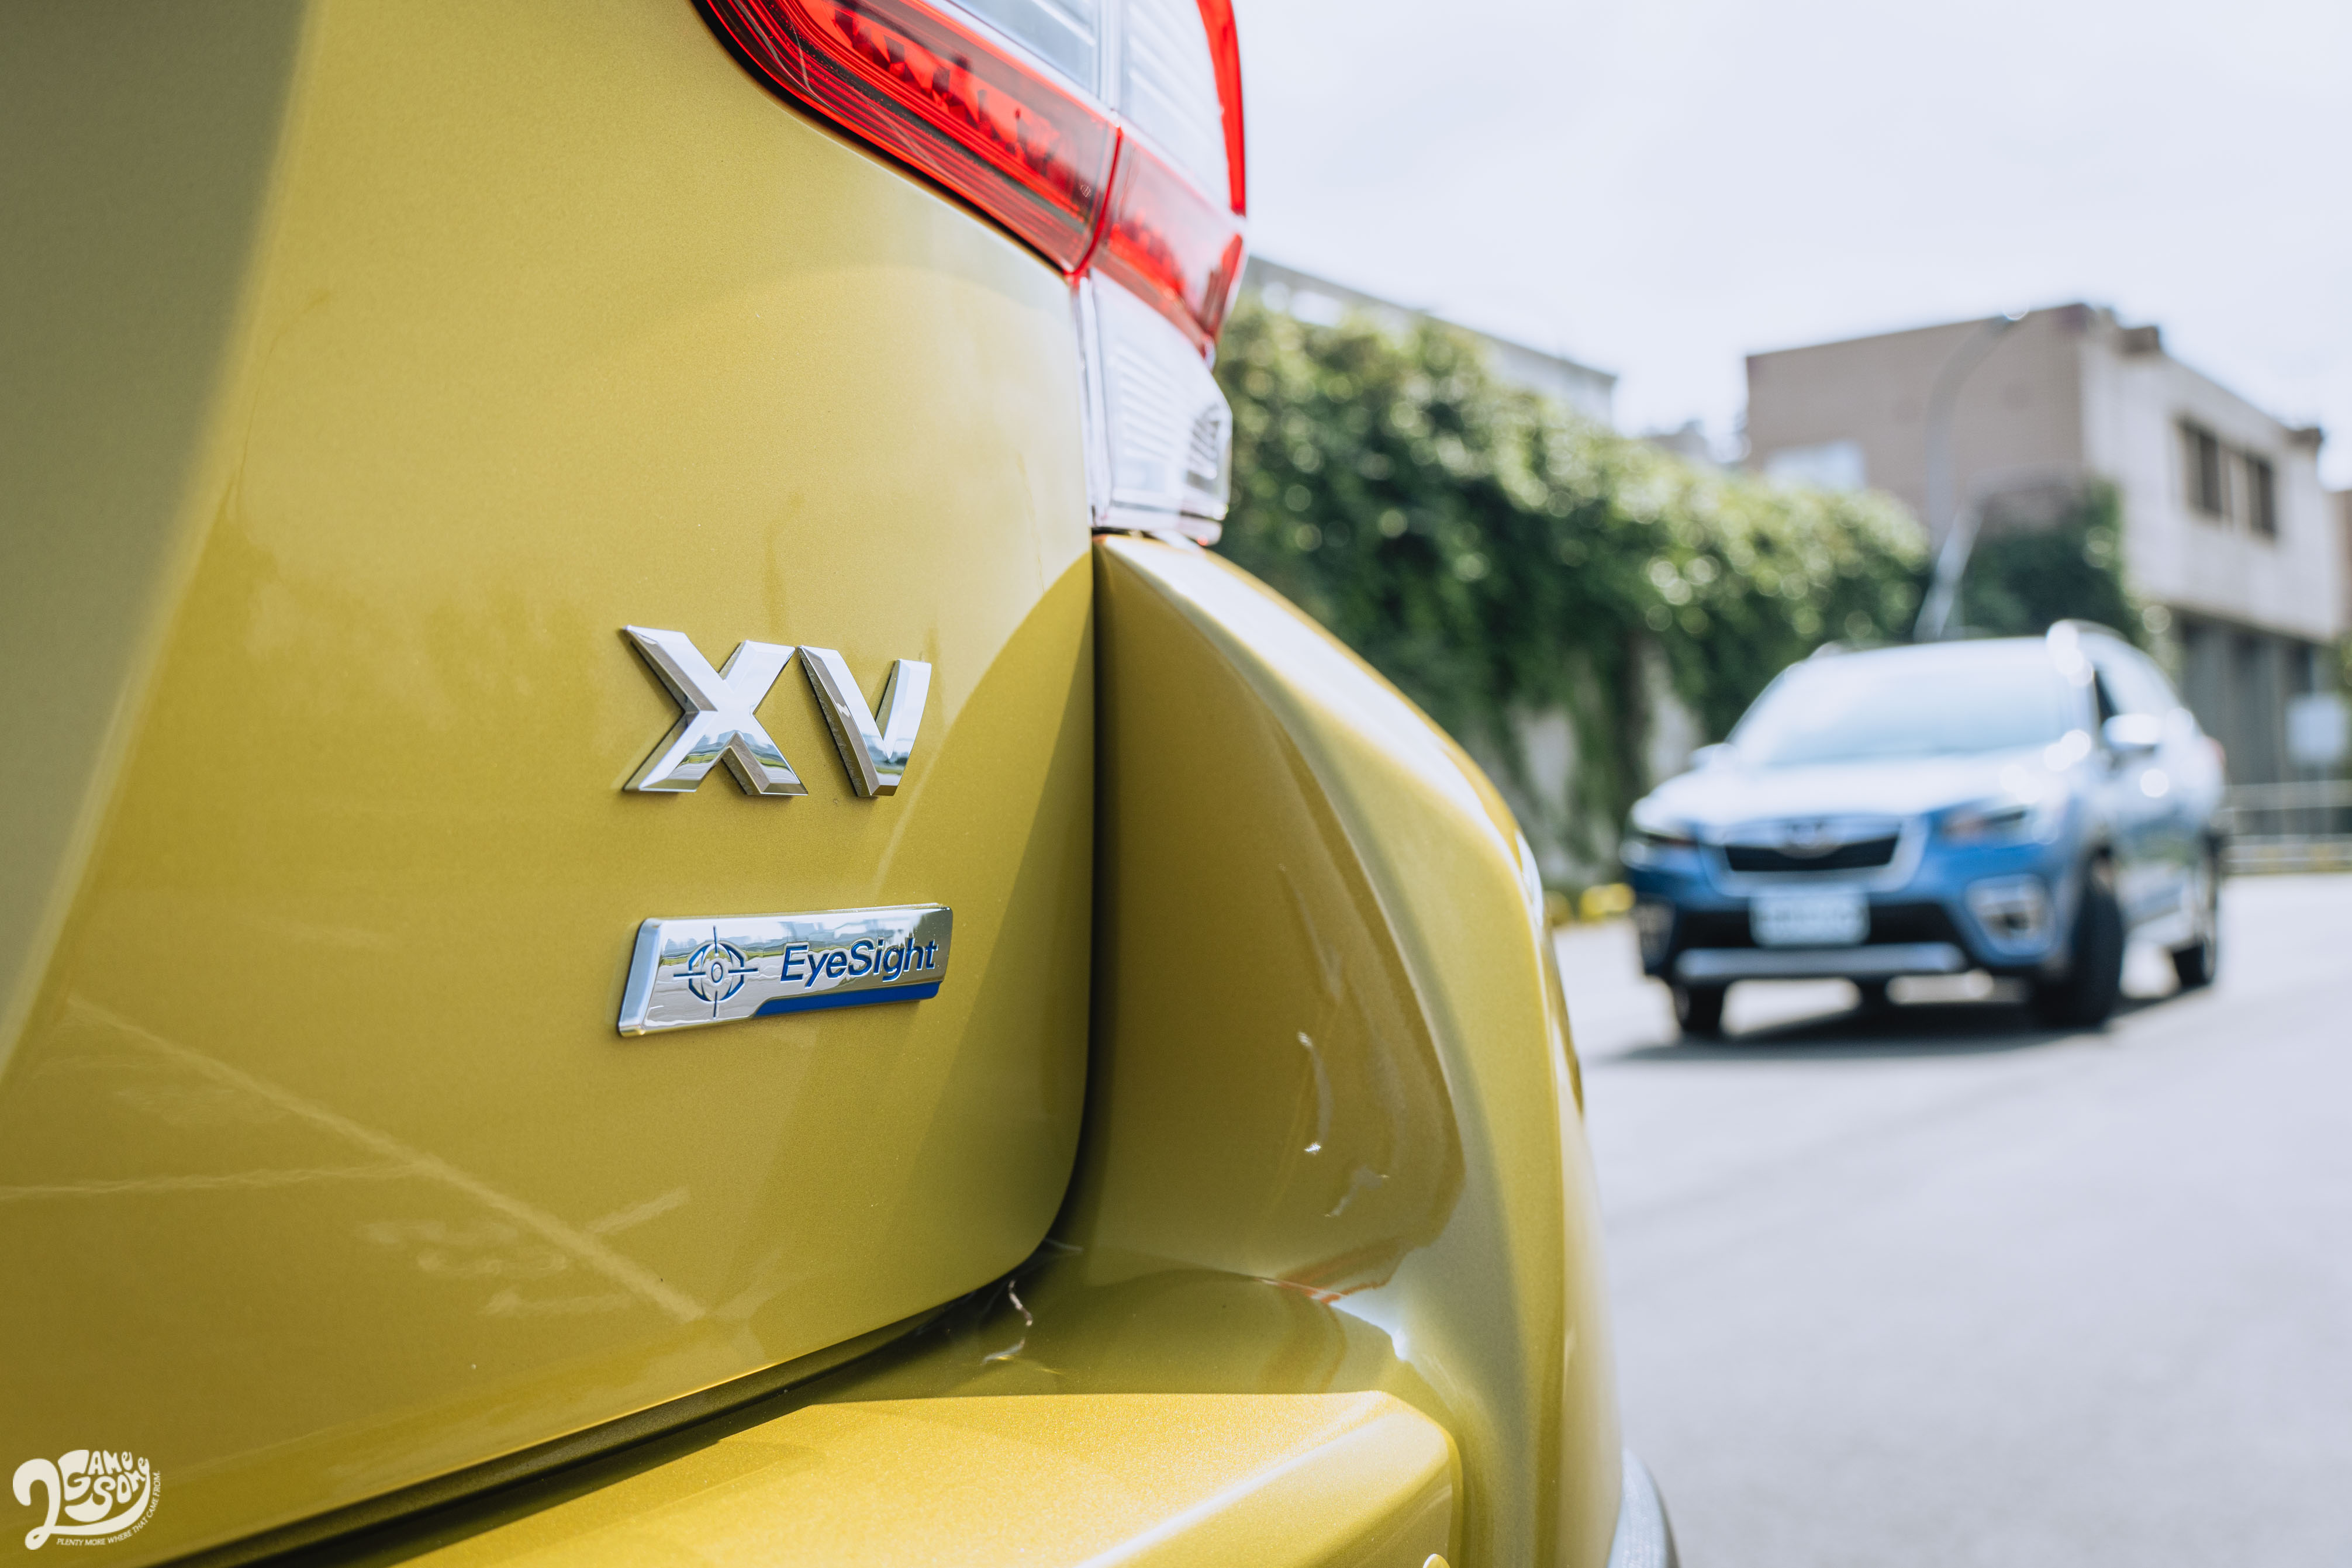 2021 Subaru XV 以雙車型販售，i-S 售價 105.9 萬元，i-S Eyesight 104.9 萬元。